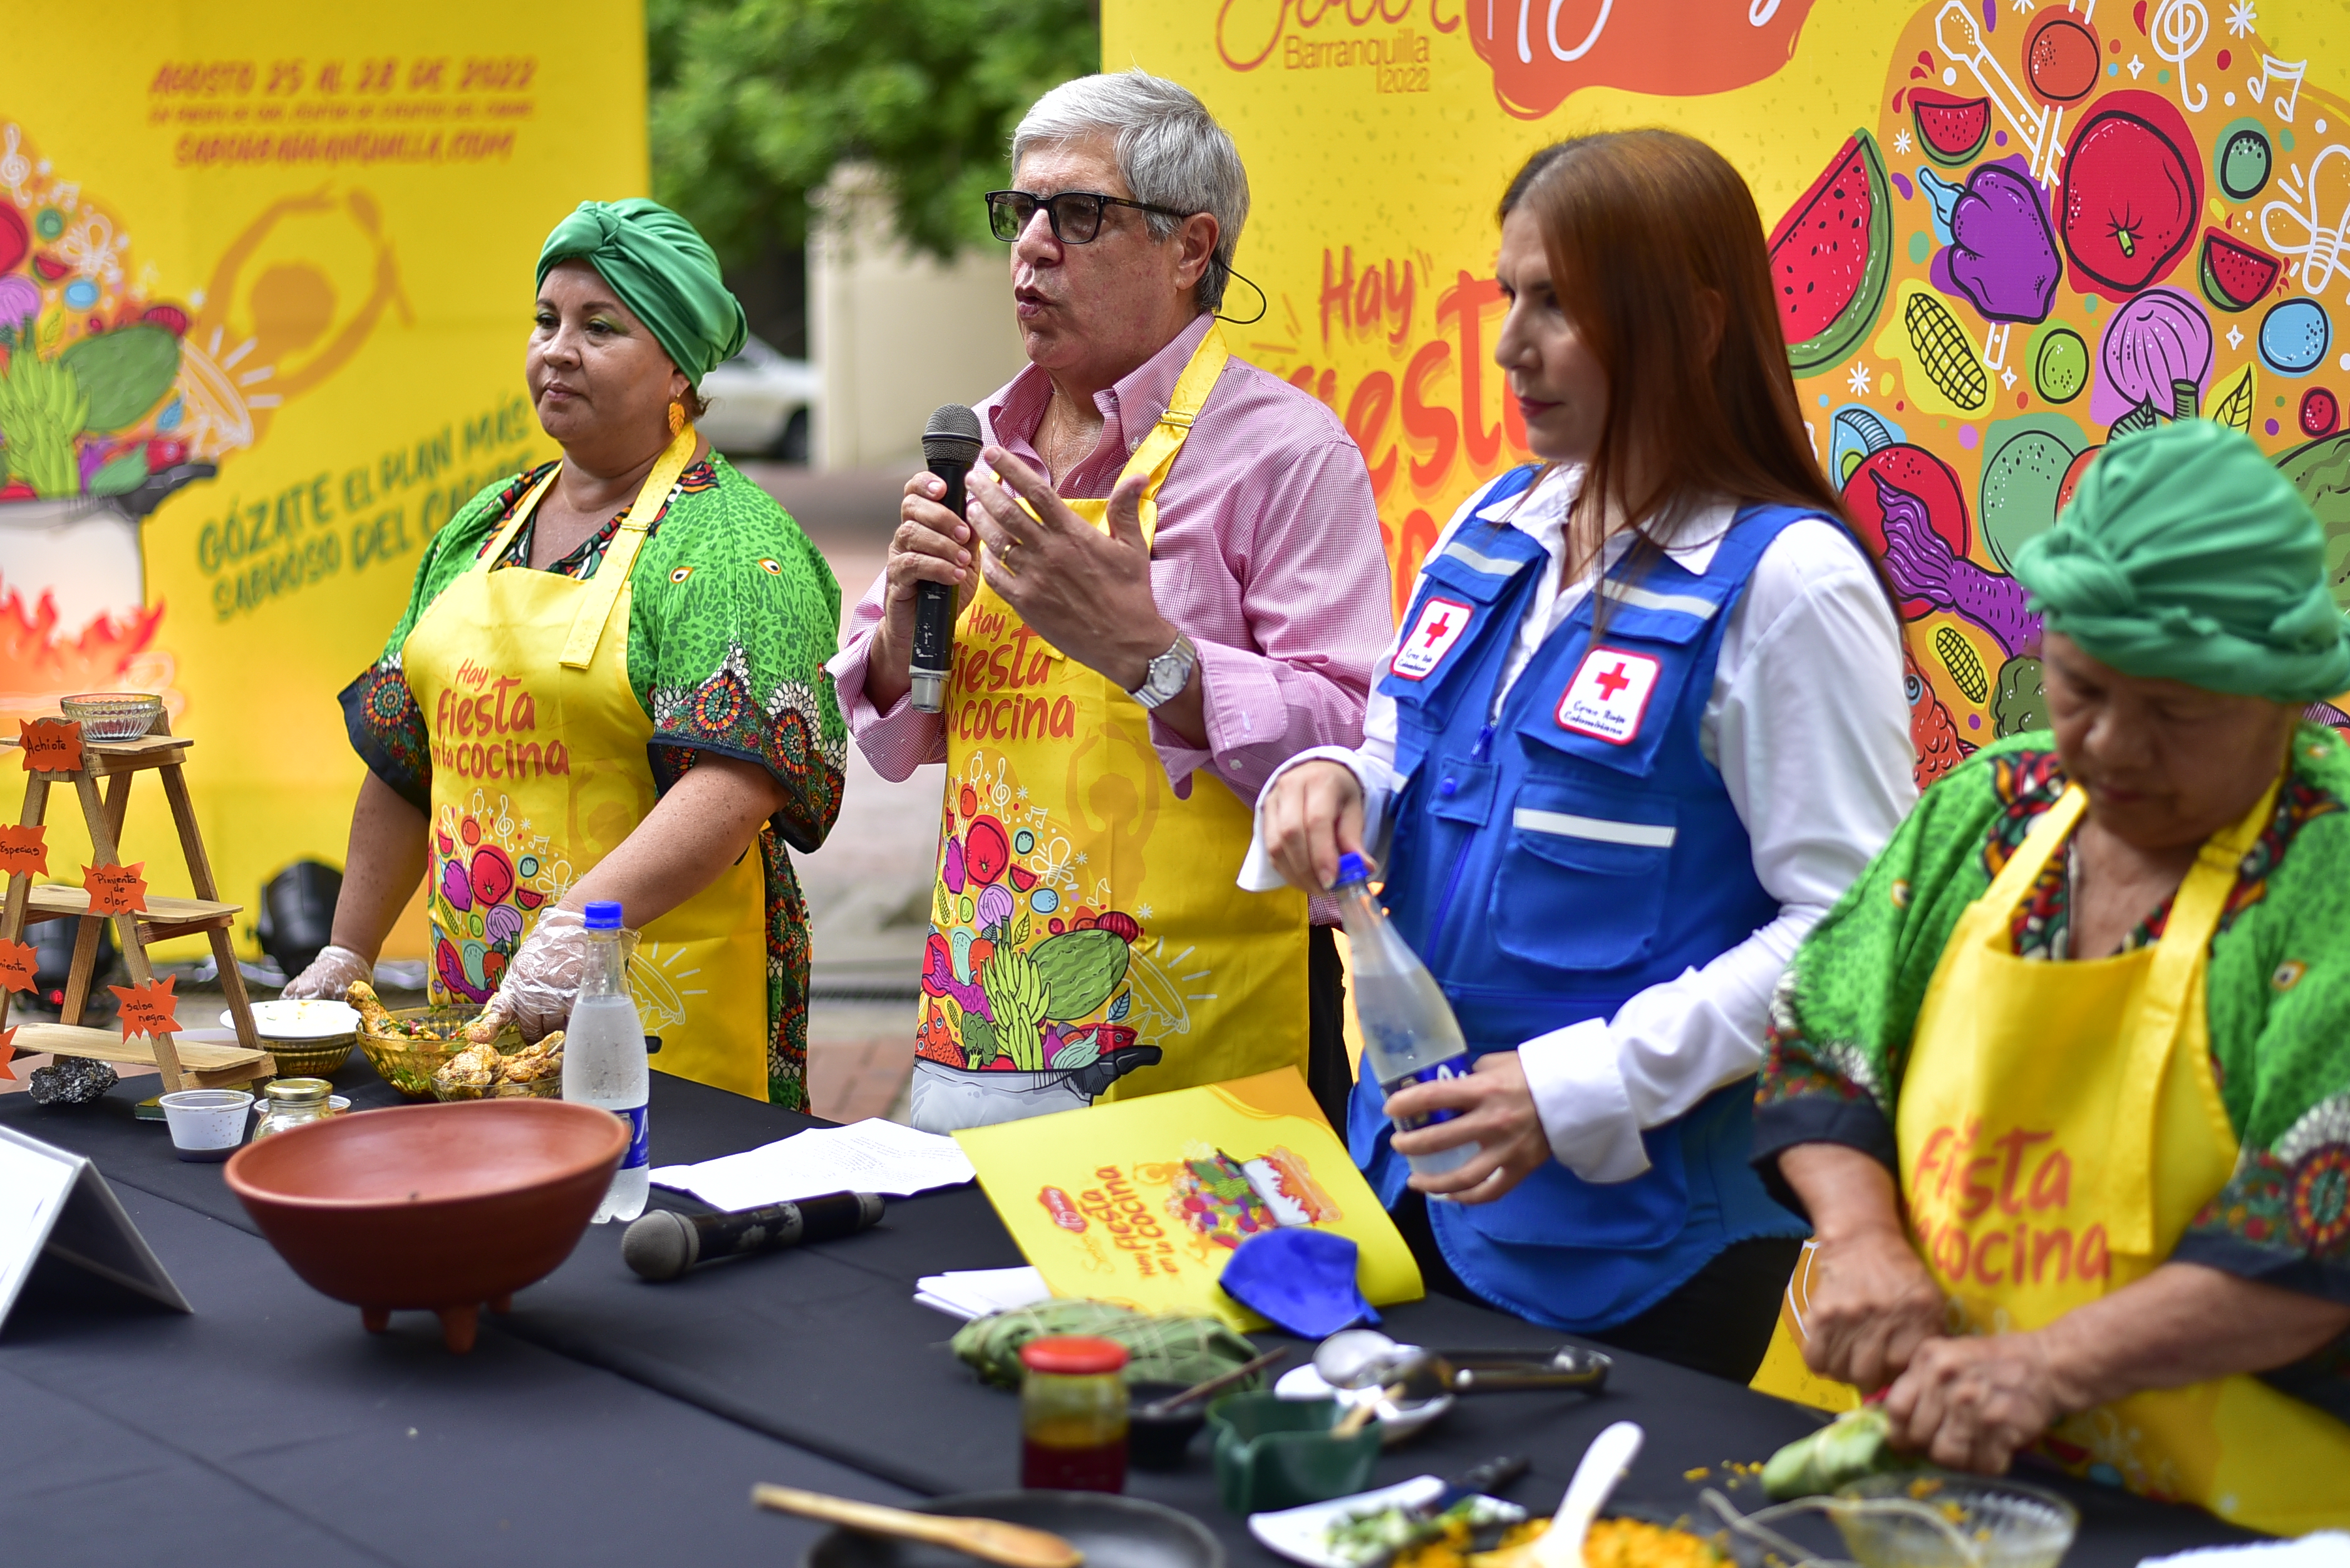 La jornada de la feria contará con la participación de 32 chefs entre internacionales, nacionales y locales.